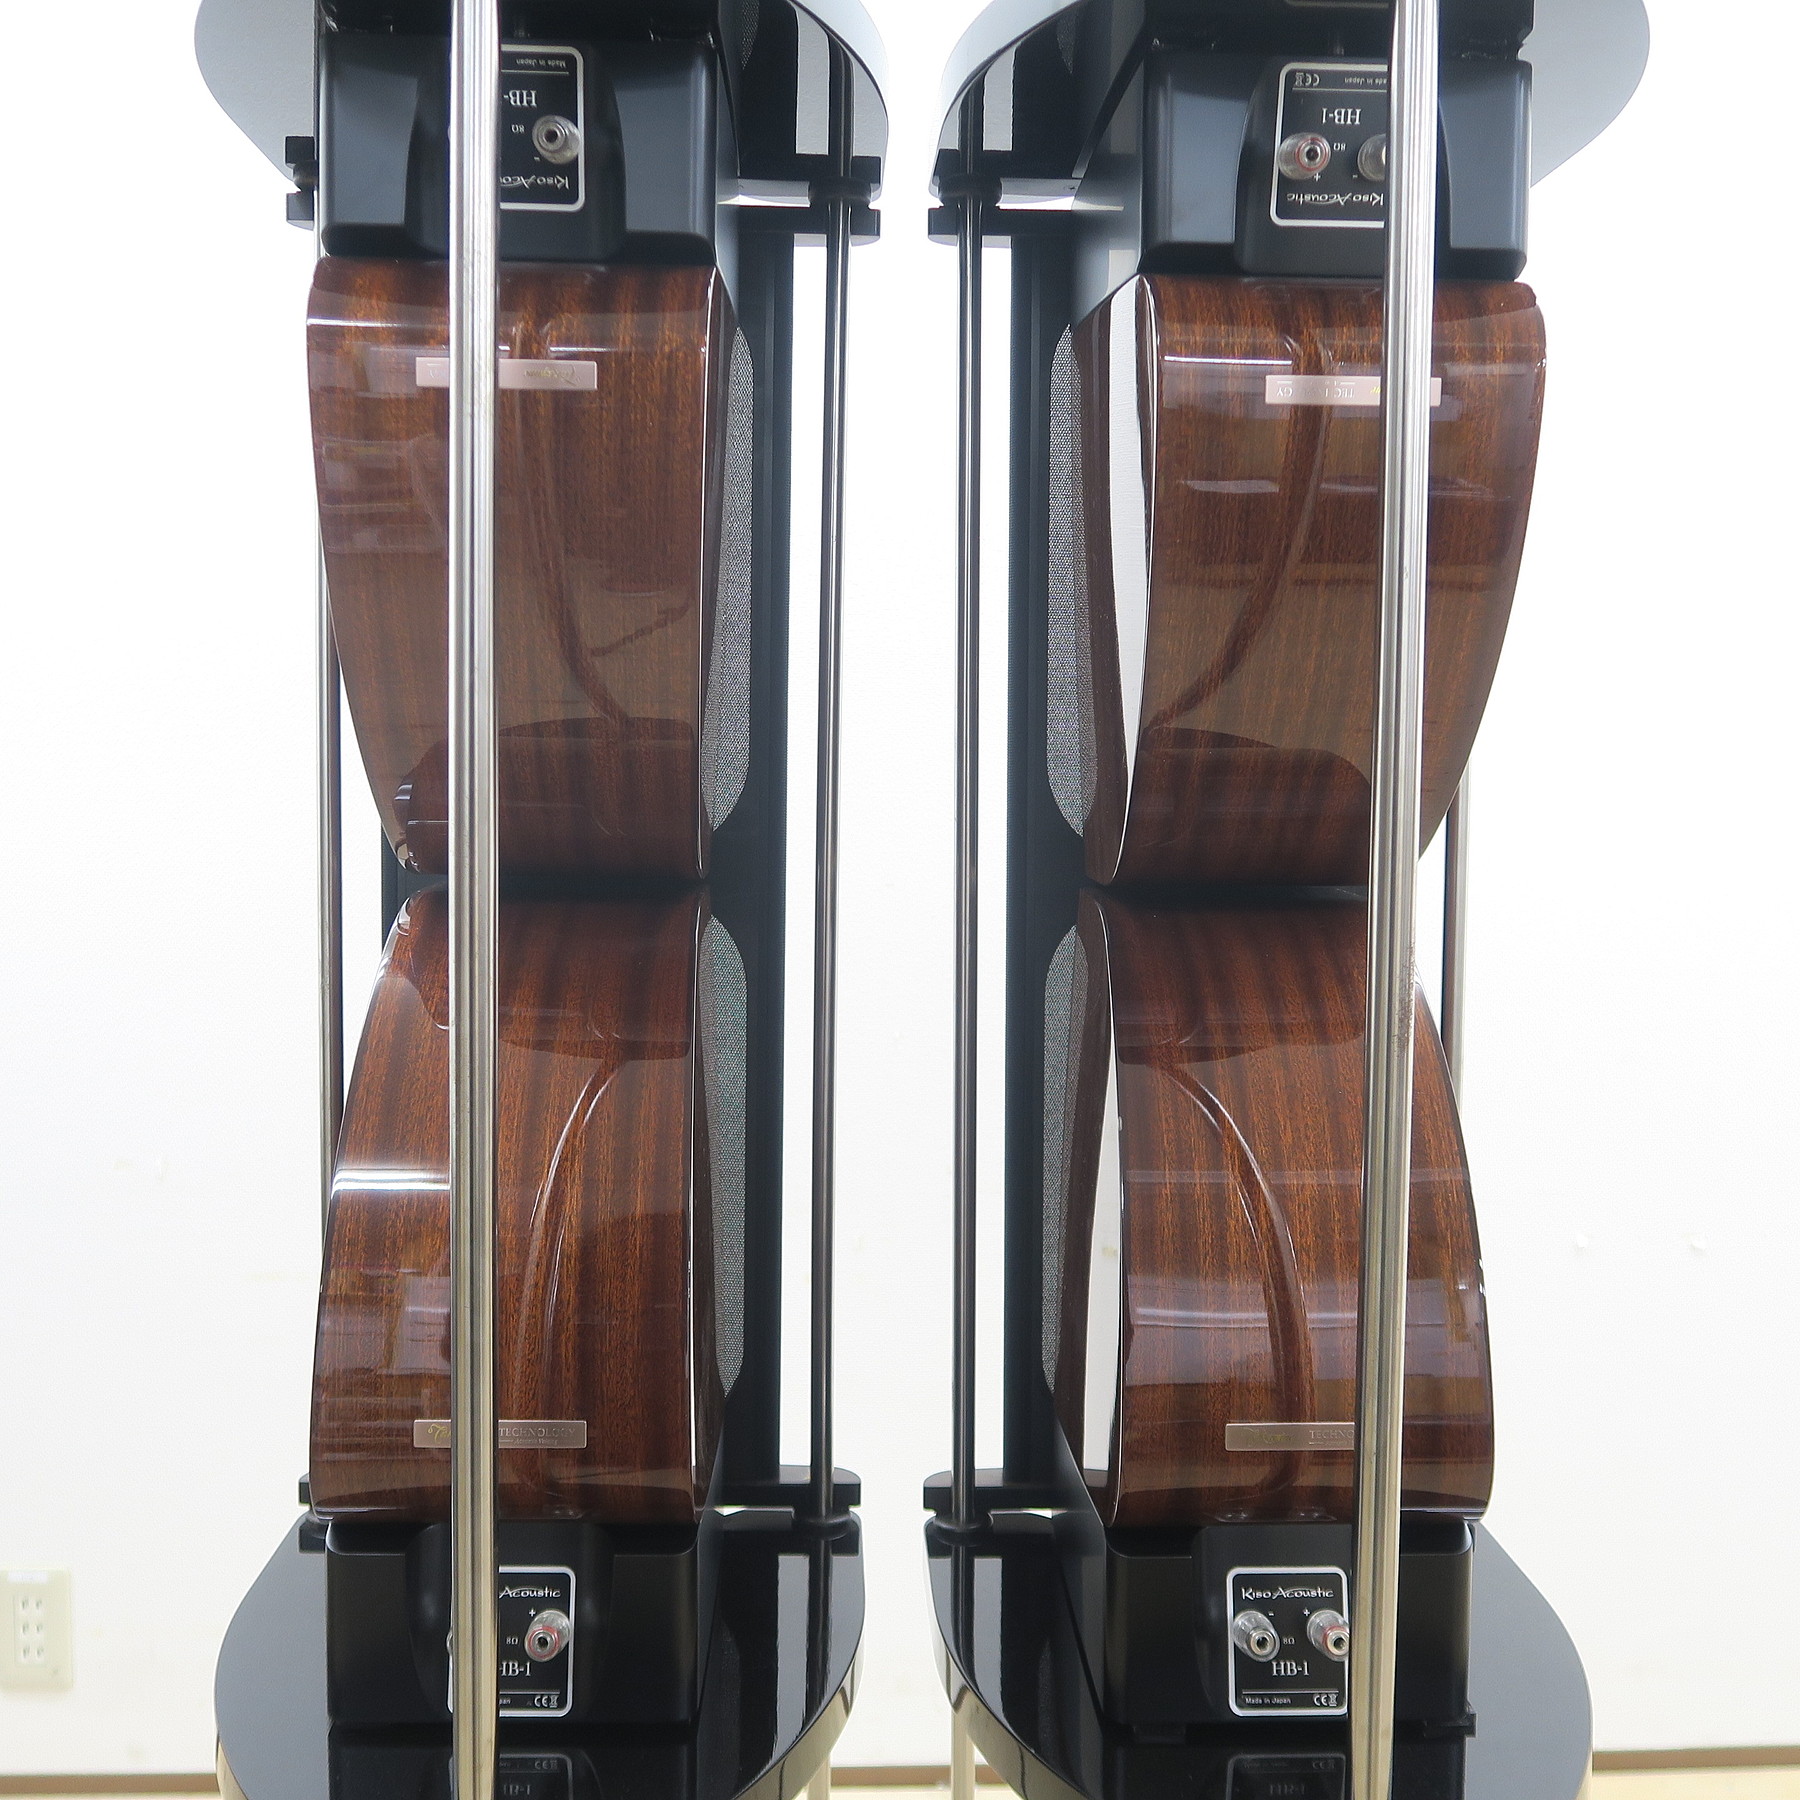 Aランク】Kiso Acoustic HB-1 スピーカー4本 専用ダブルスタック